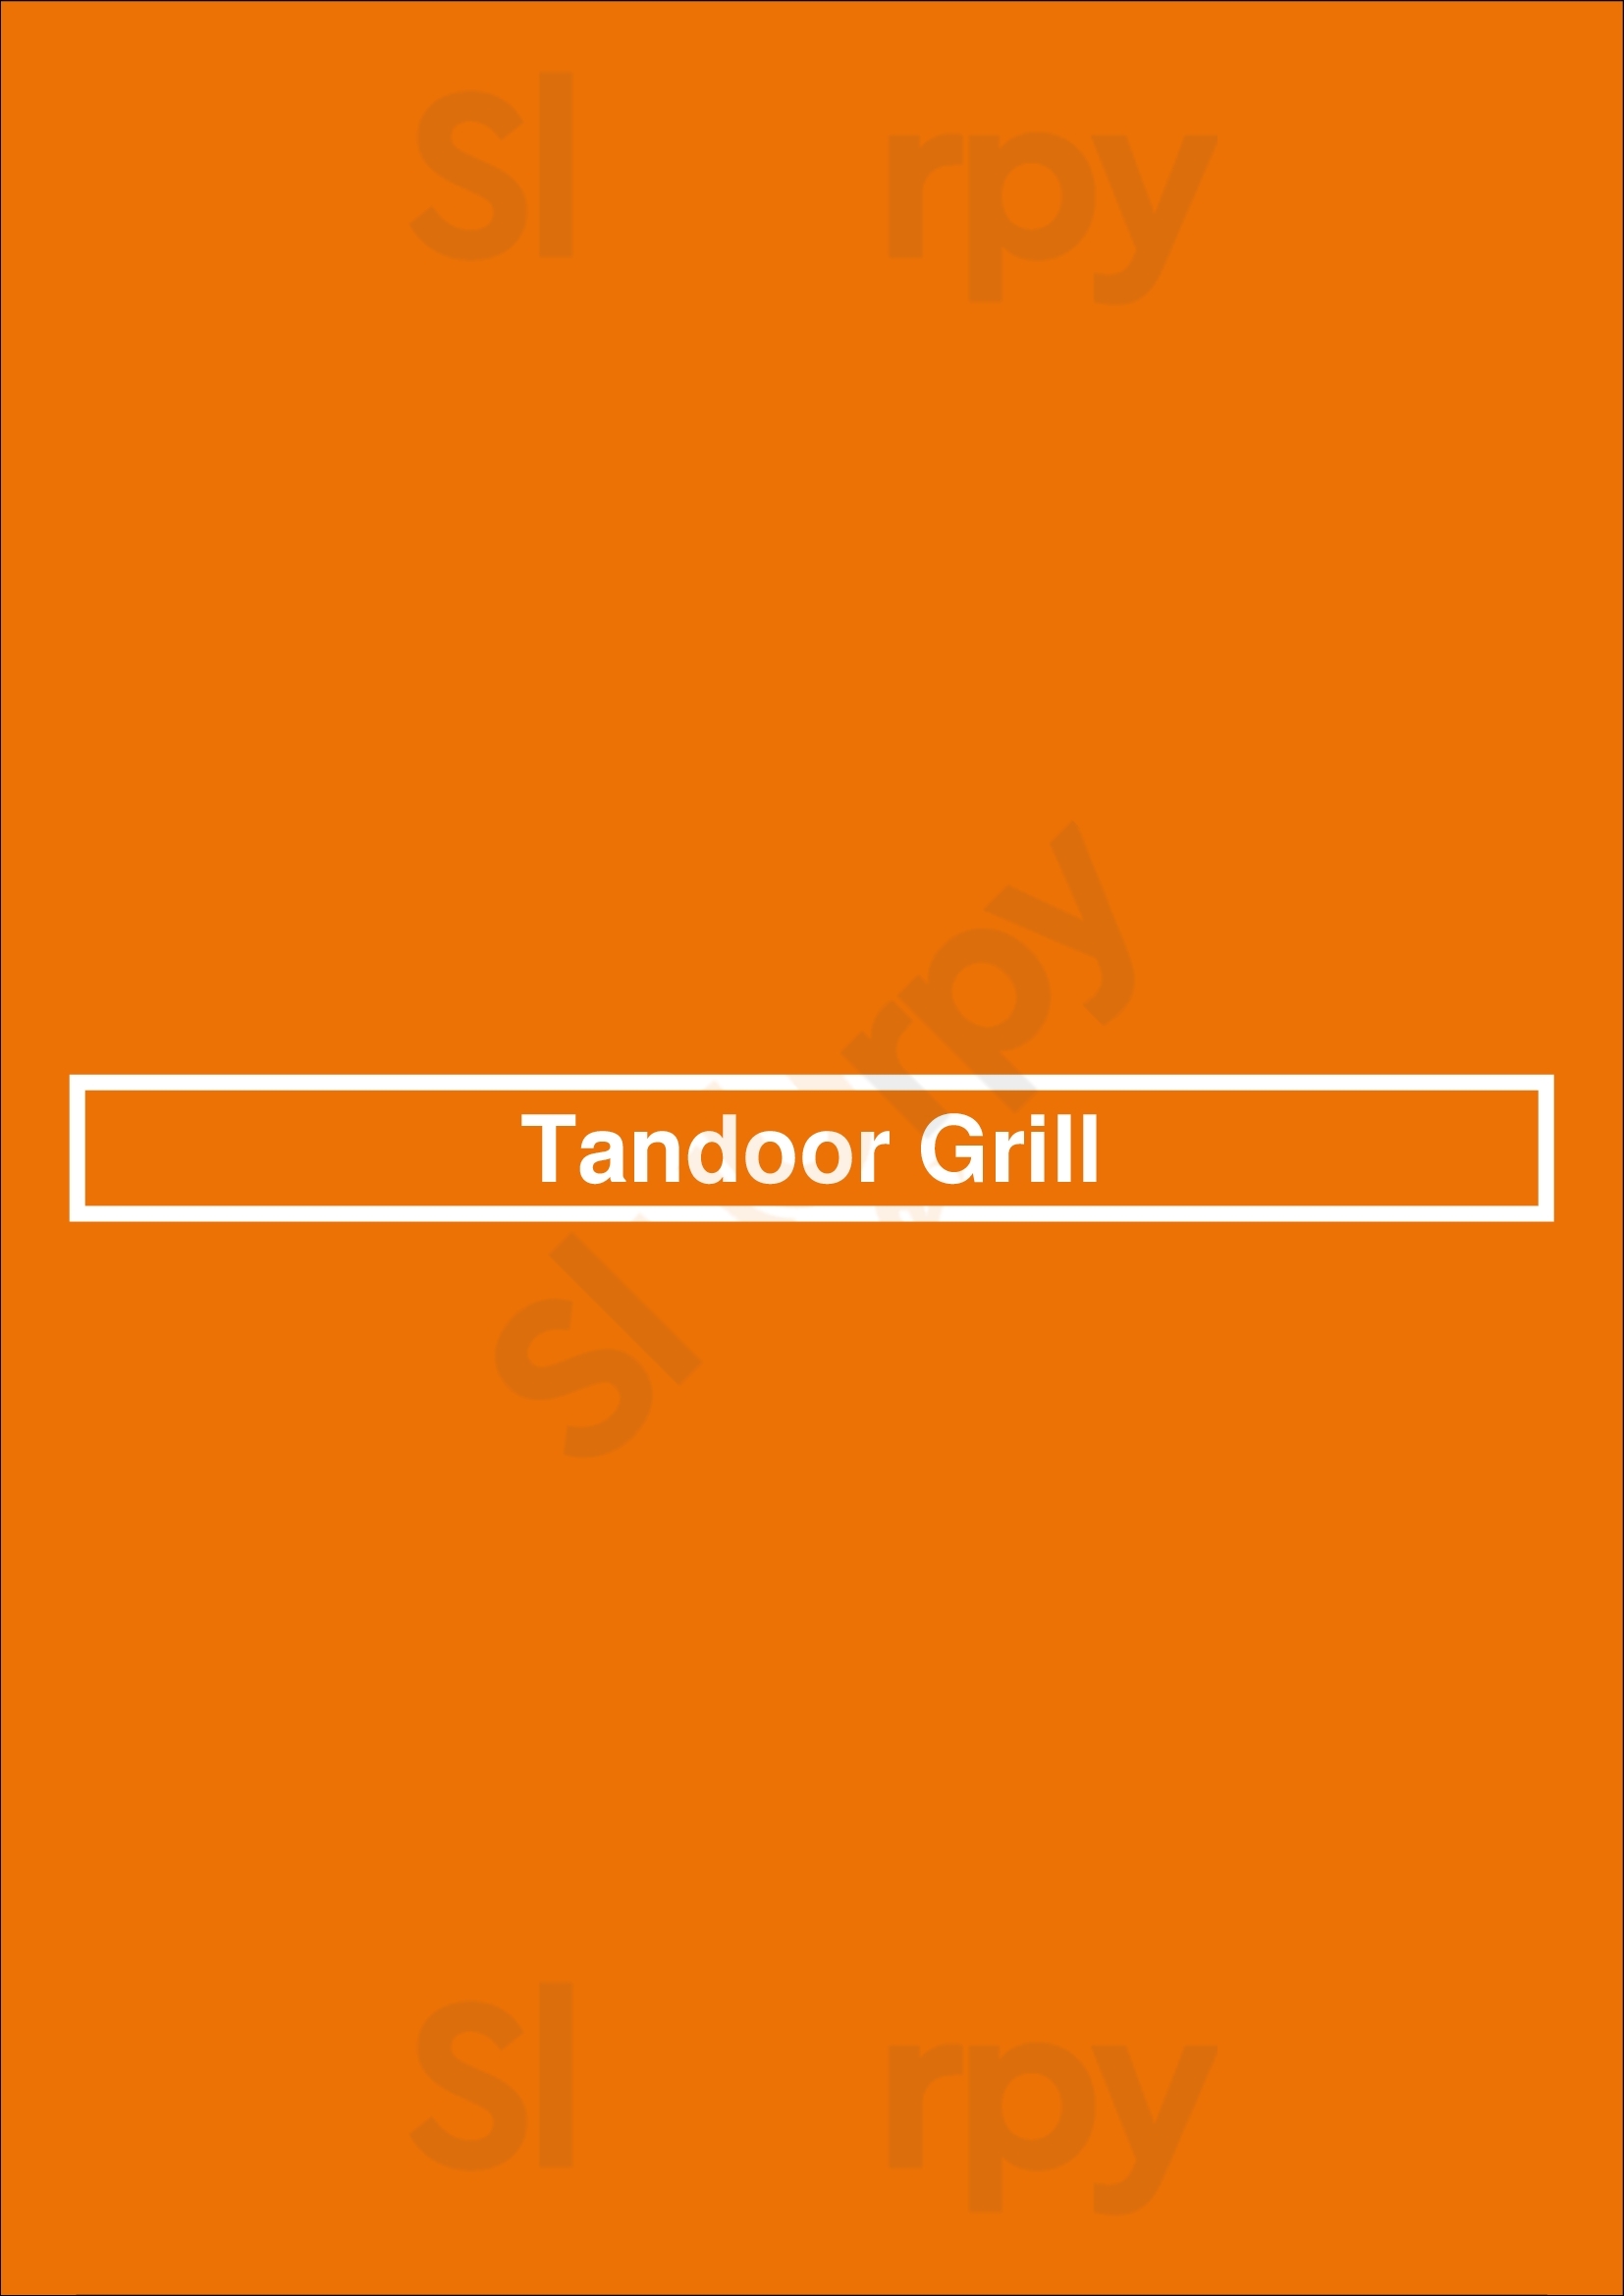 Tandoor Grill Long Beach Menu - 1